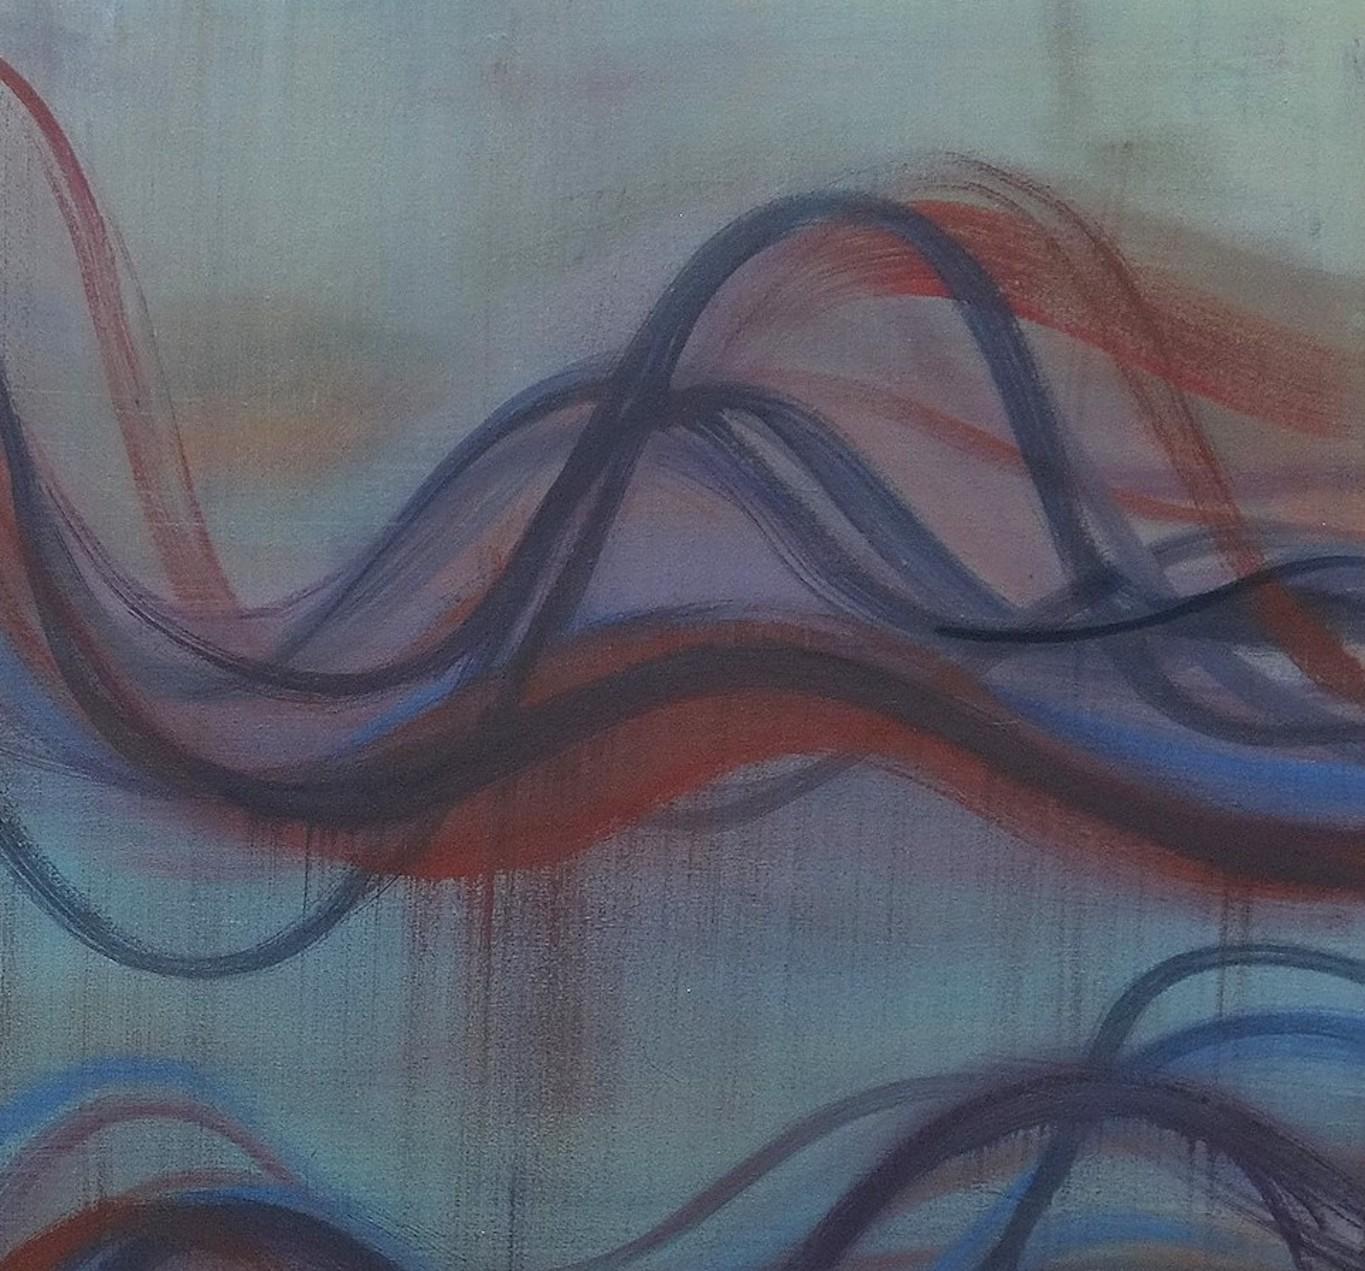 In wellenförmigen Linien in Blautönen mit Andeutungen von blassem Rosa und dunklem Rot untersucht Margaret Neill die Eigenschaften abstrakter kurvenförmiger Formen, die sie in den lokalen Gegebenheiten ihrer Umgebung findet. Diese Erfahrung wird in